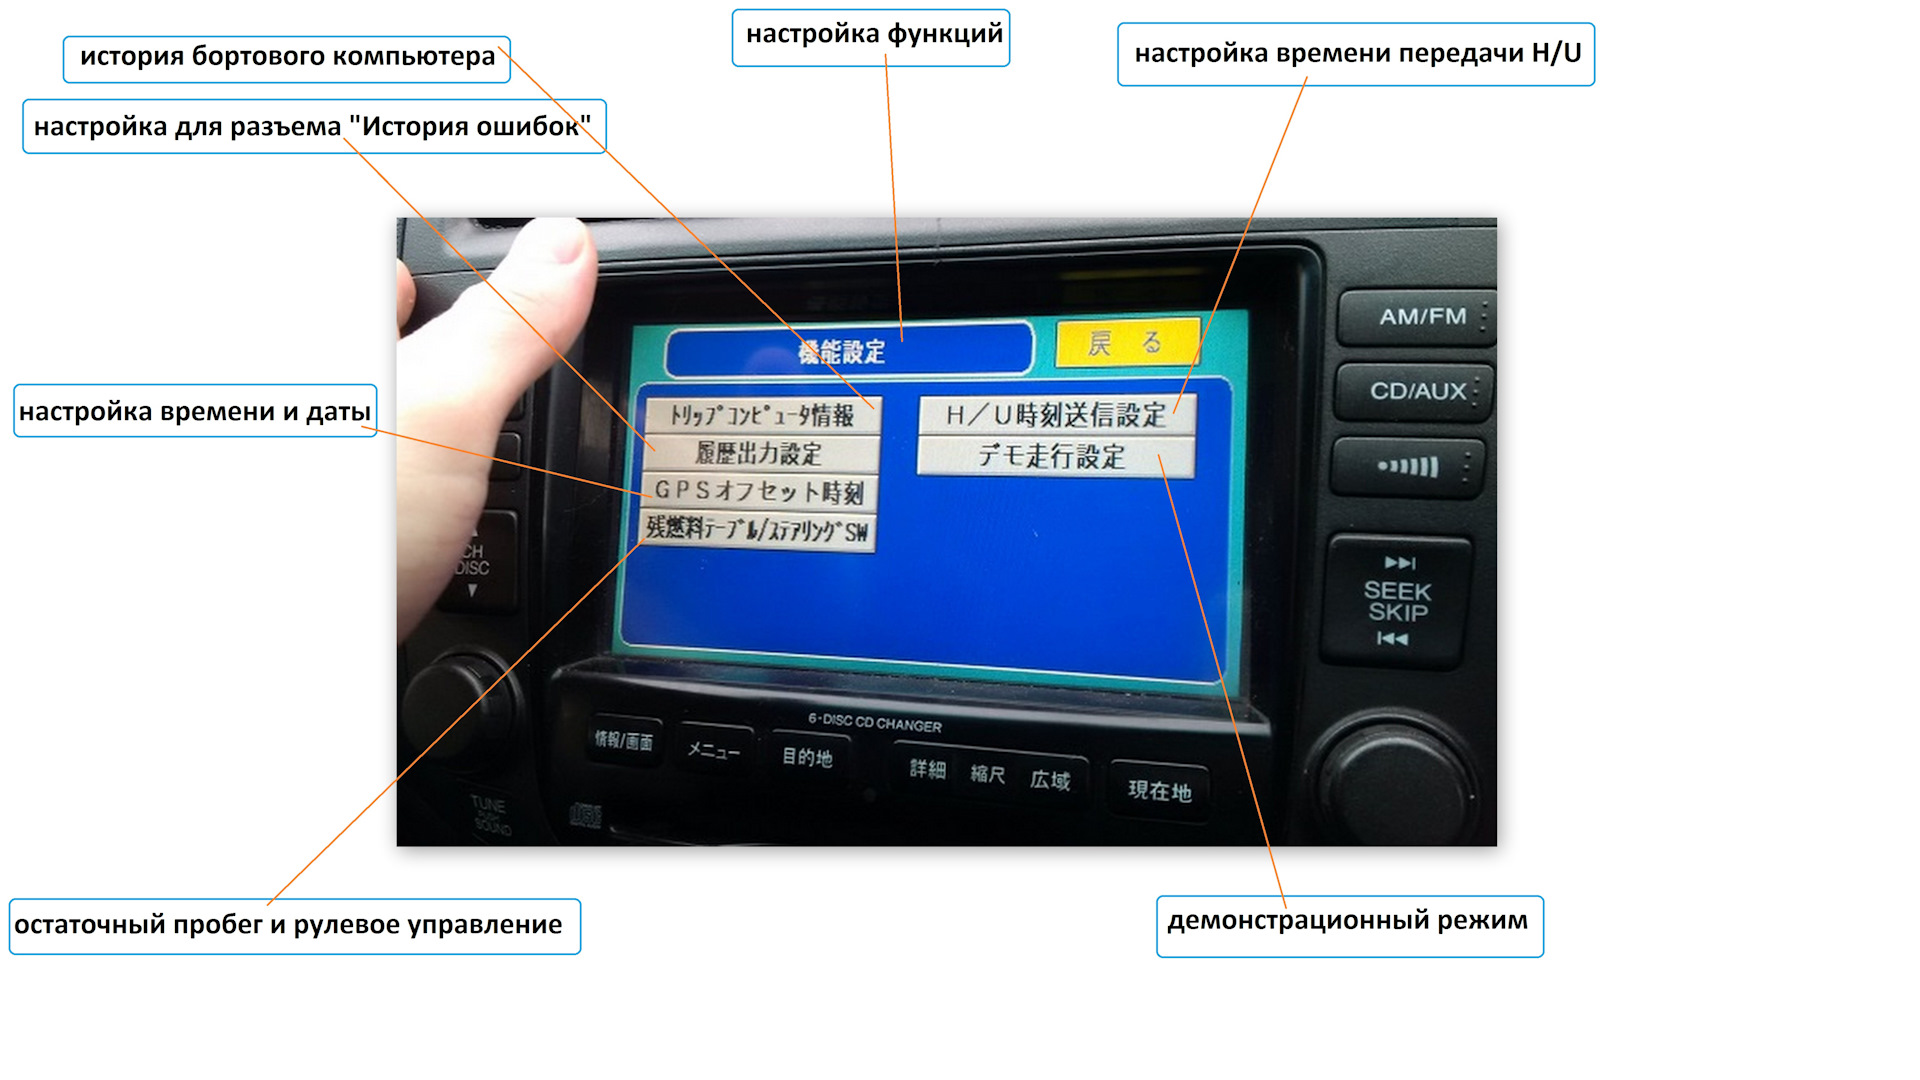 Перевести фото с японского на русский онлайн бесплатно